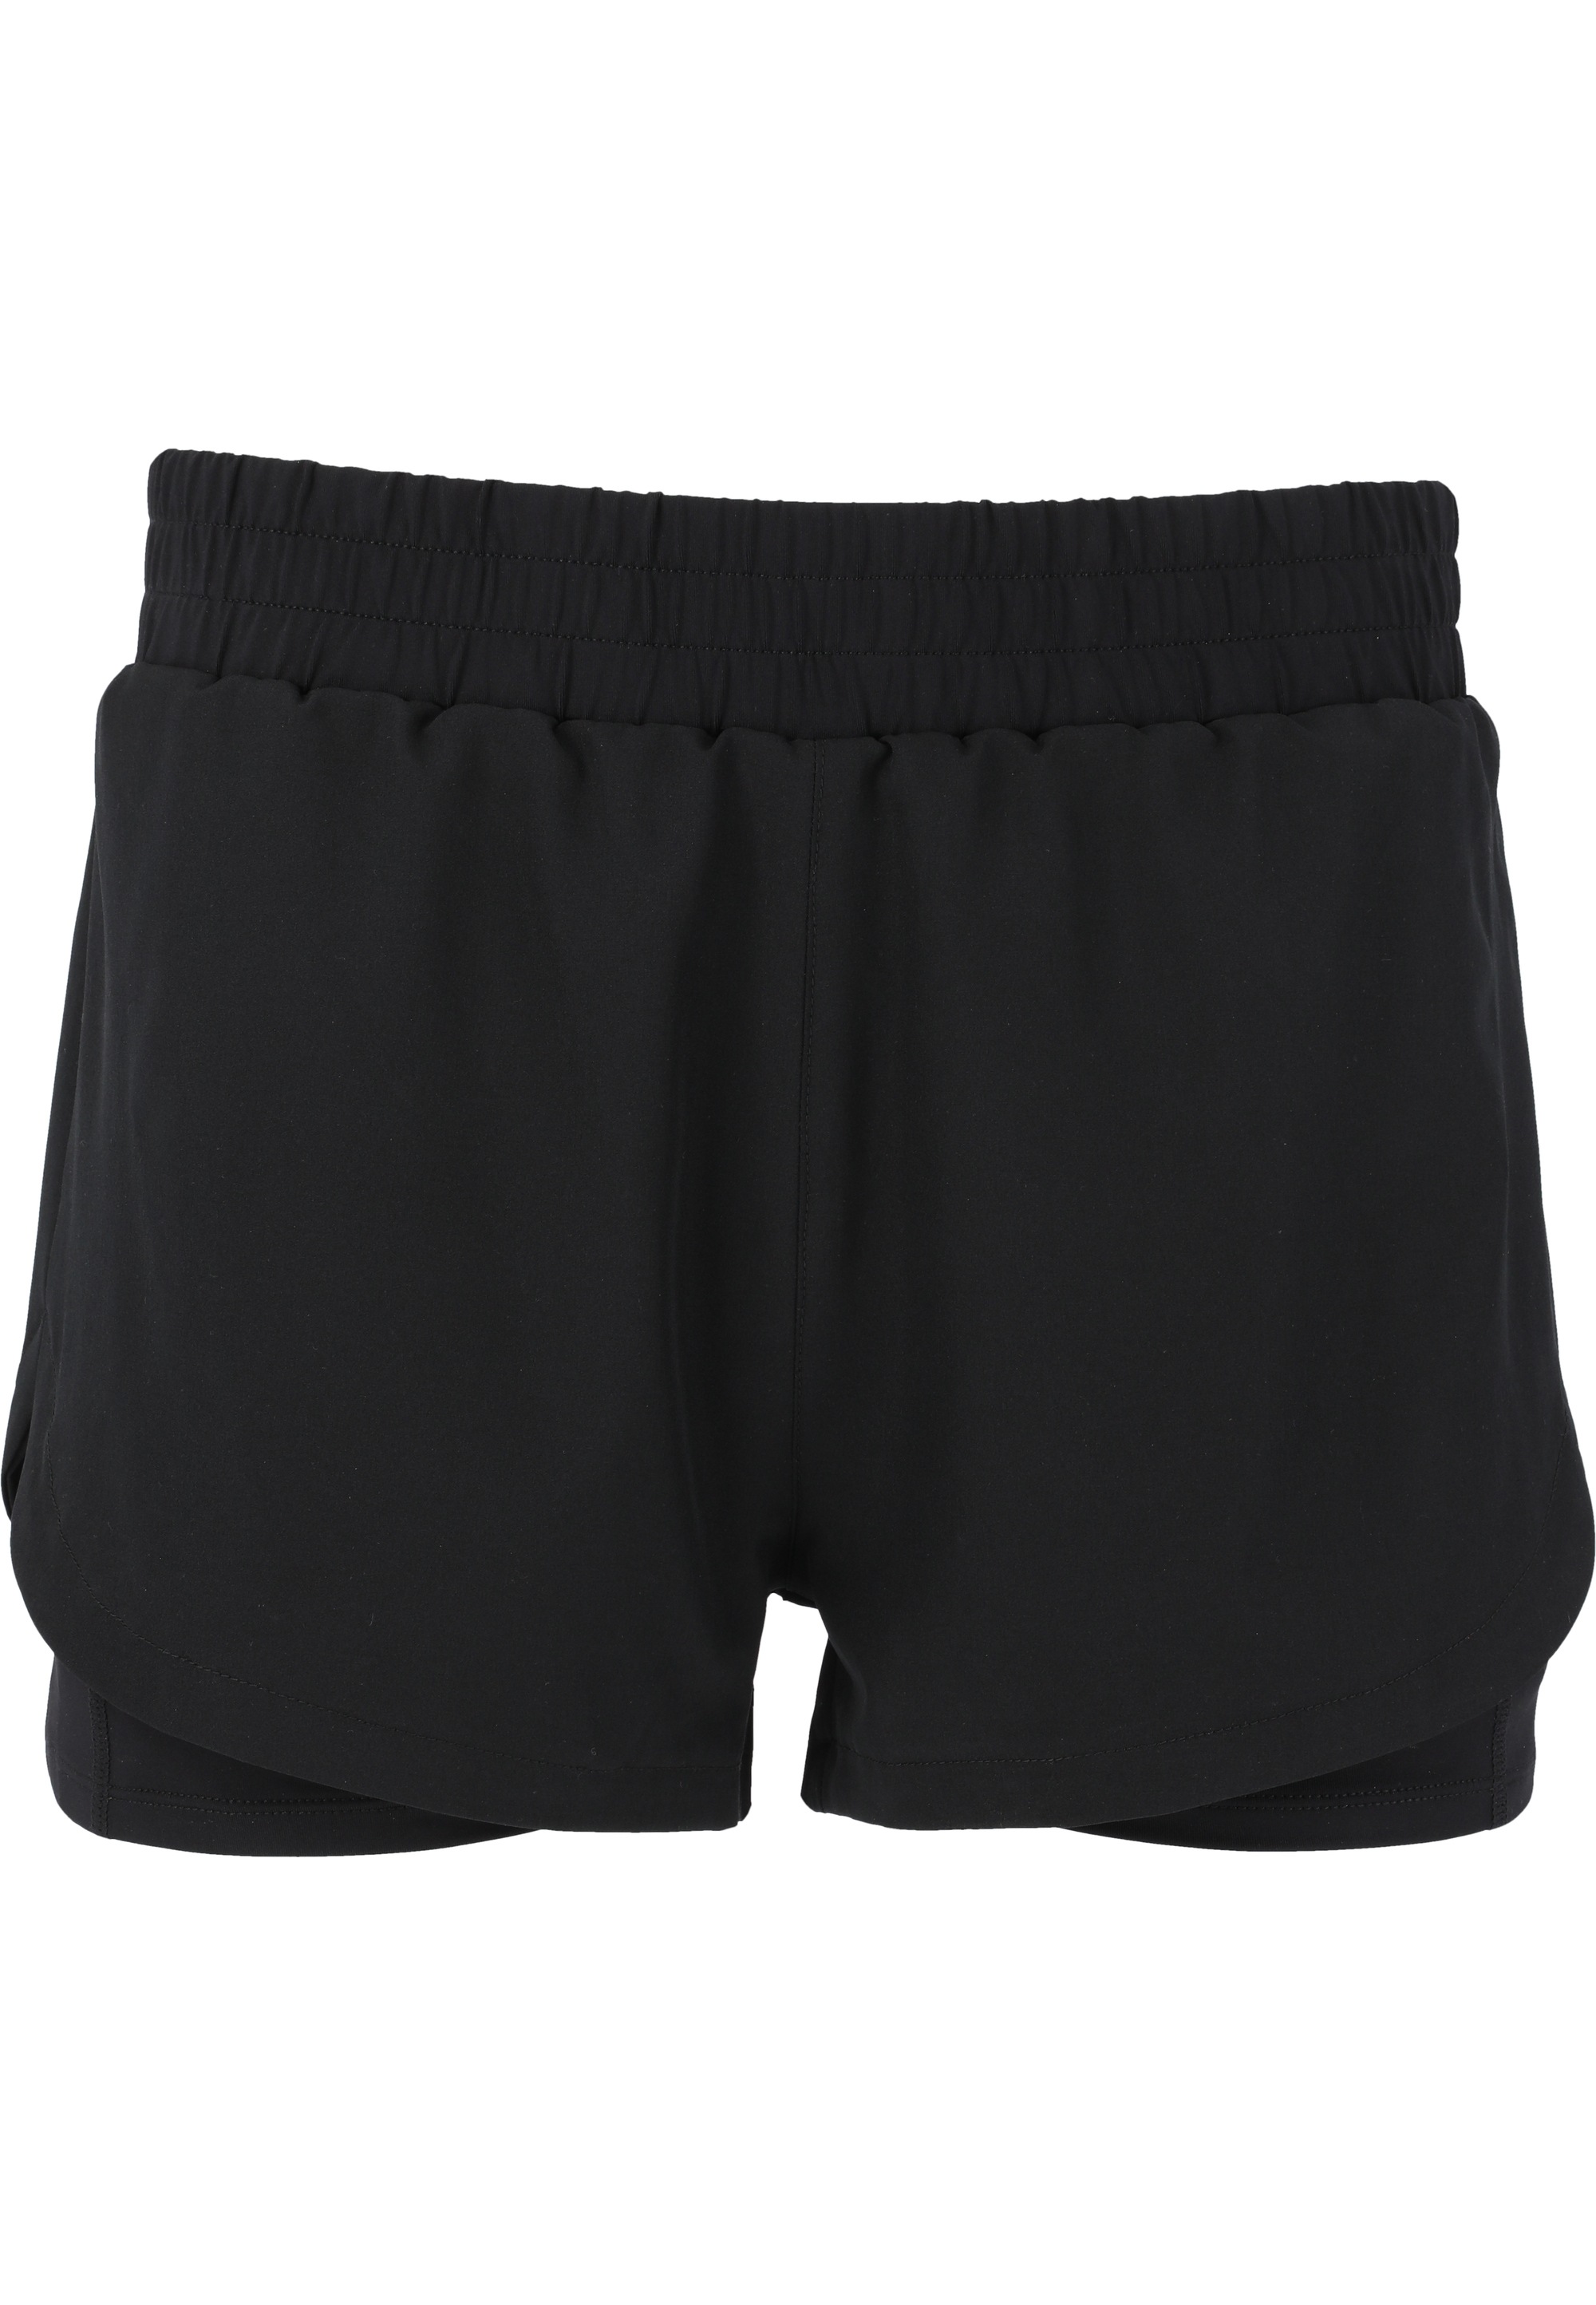 ENDURANCE Shorts »Yarol«, mit praktischer shoppen 2-in-1-Funktion